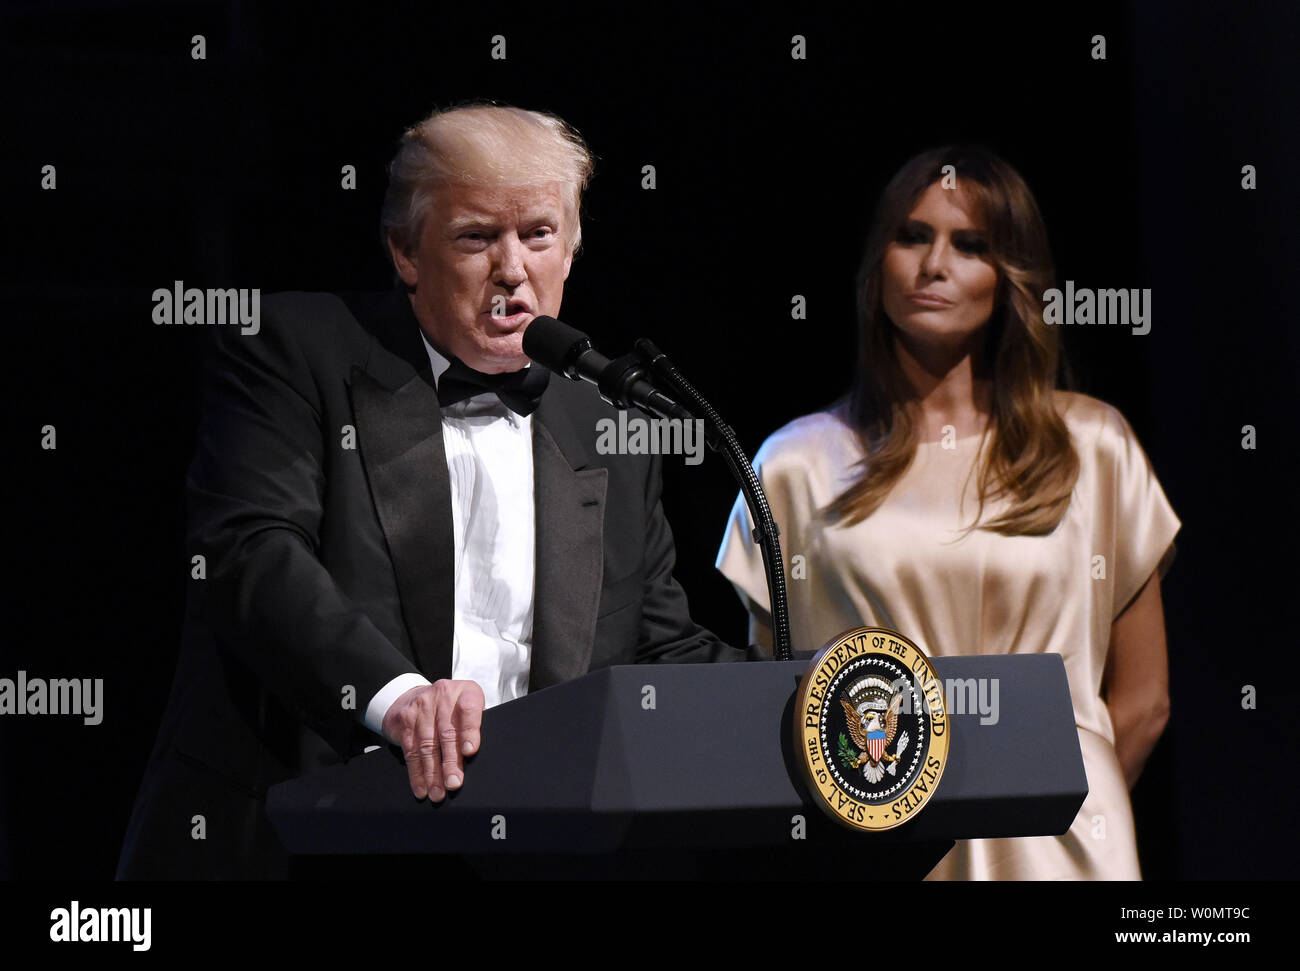 Präsident Donald Trump spricht als Erste Dame Melania Trump auf während der jährlichen Gala im Ford Theater Präsident Abraham Lincoln's Legacy am 4. Juni zu Ehren aussieht, 2017 in Washington, DC. Foto von Olivier Douliery/UPI Stockfoto